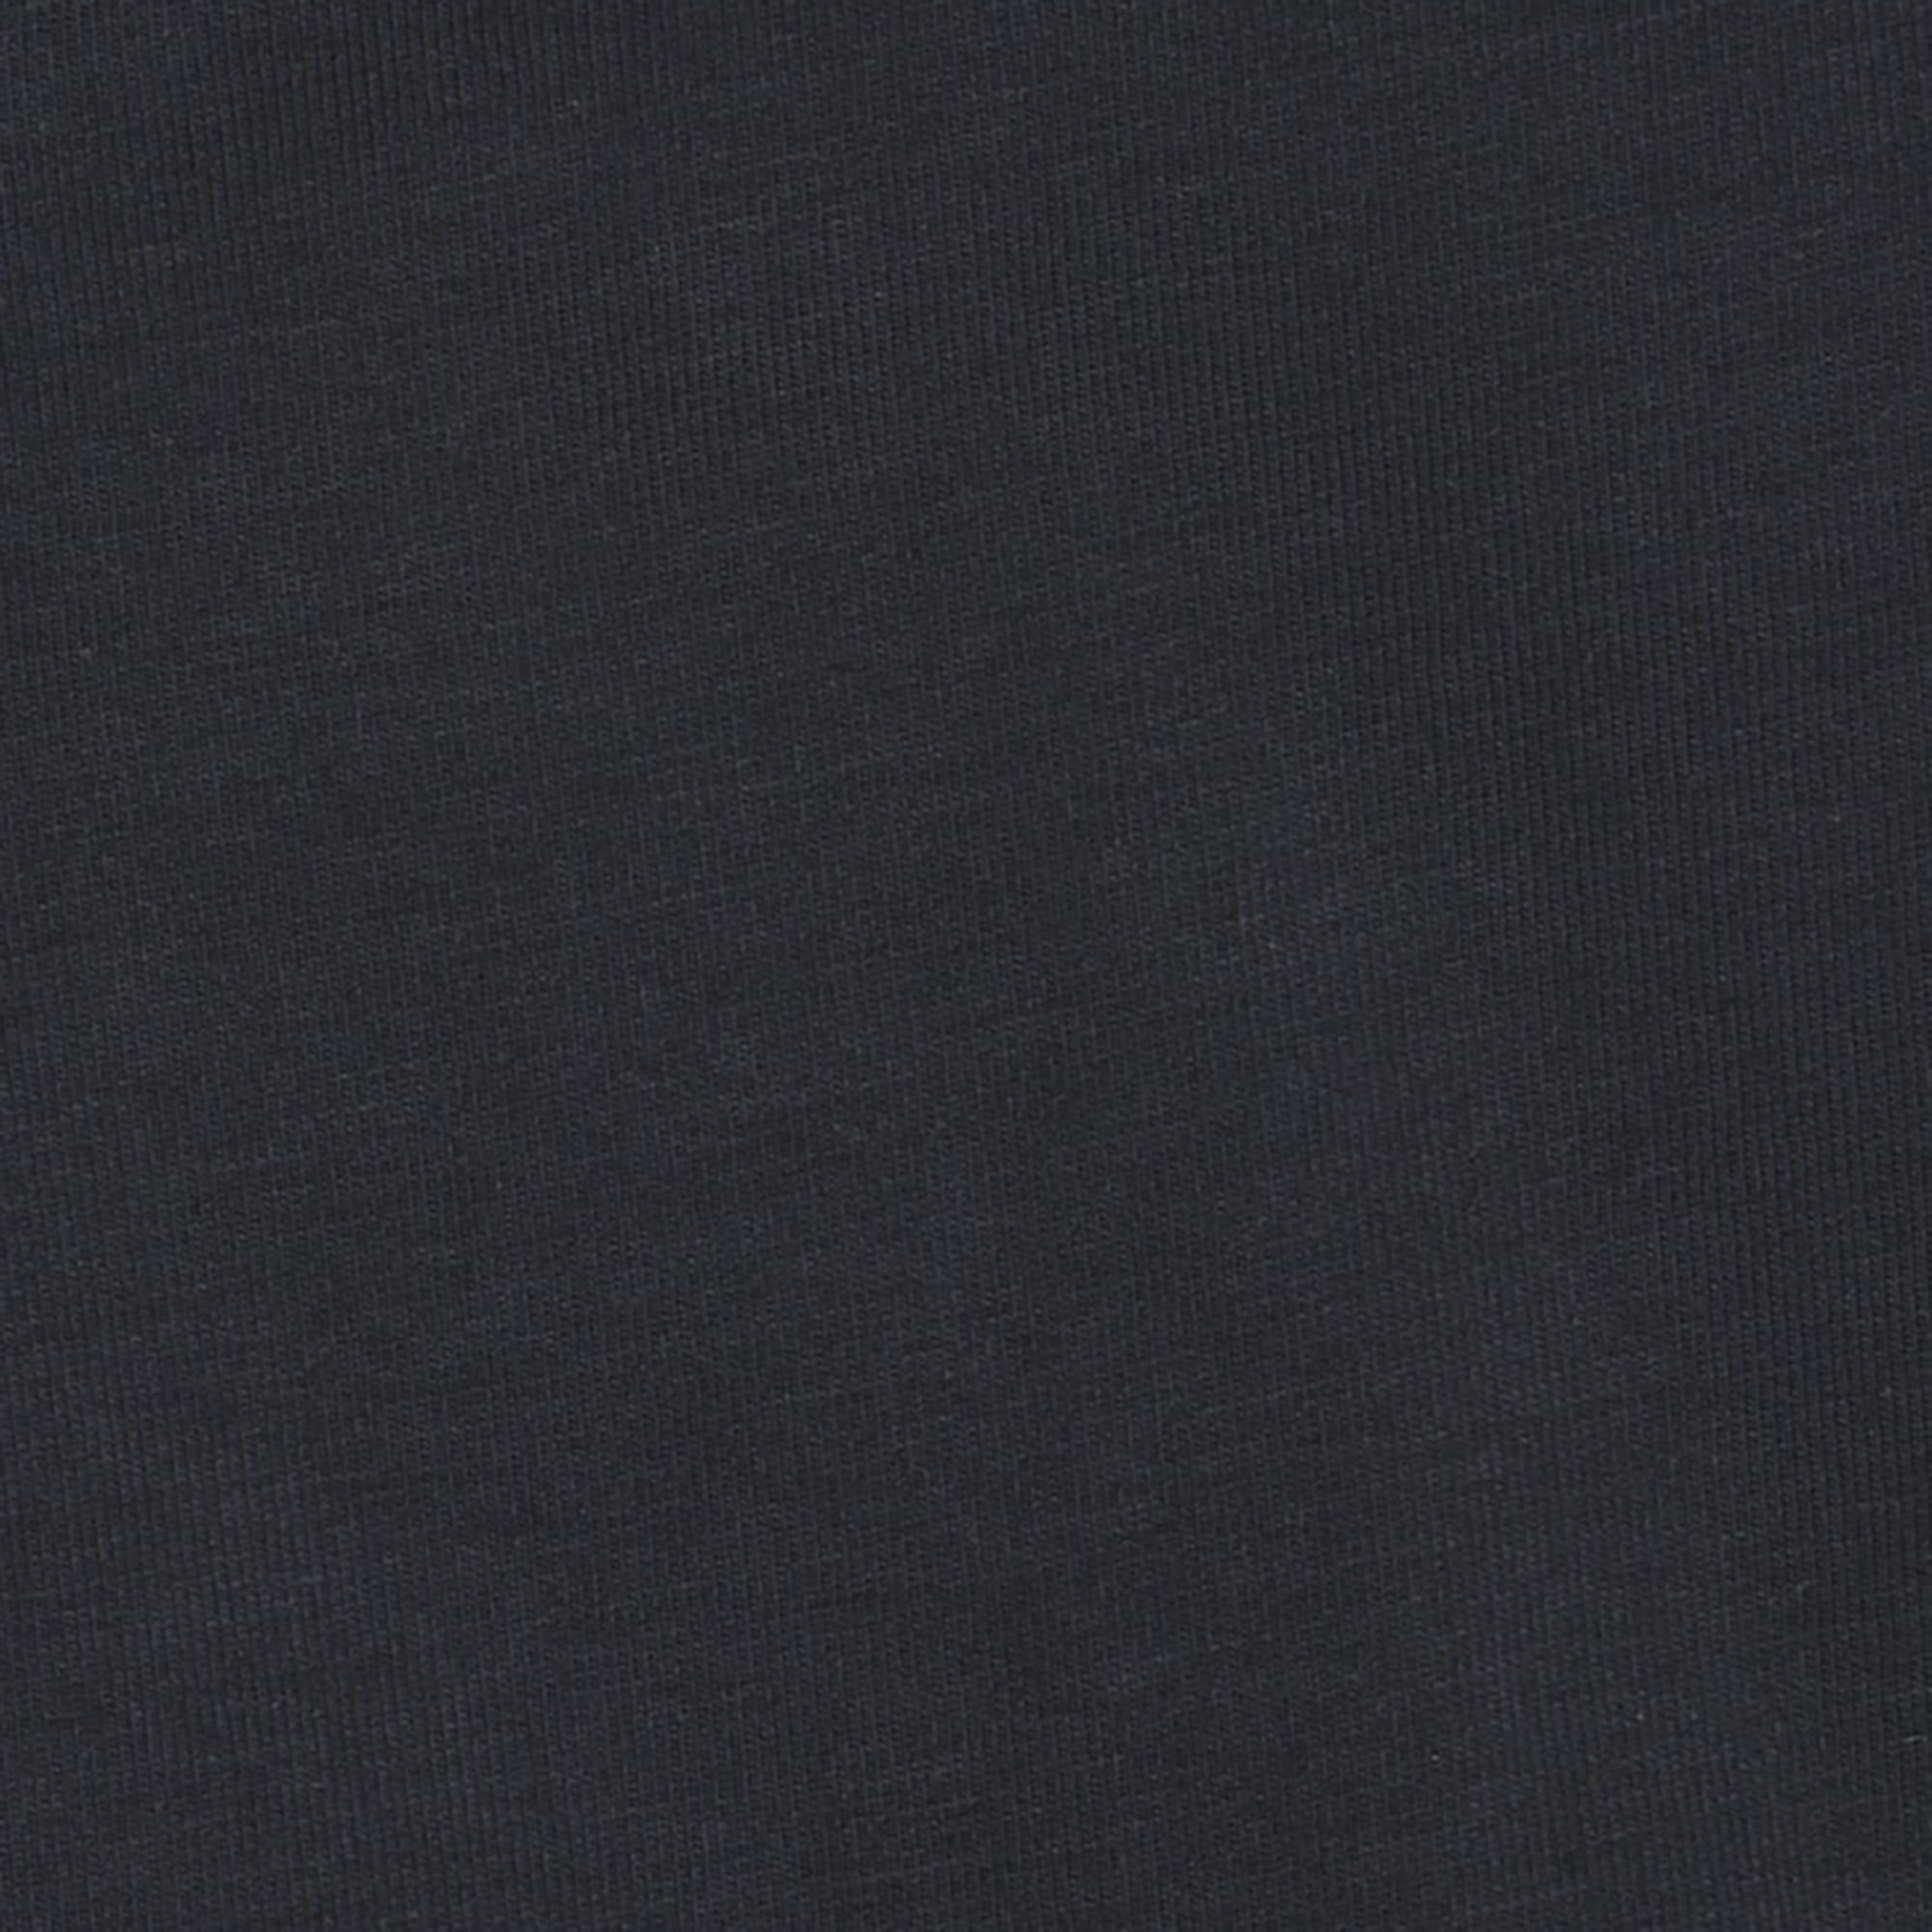 Мужская футболка Pantelemone MF-866 48 темно-серая, цвет темно-серый, размер 48 - фото 5